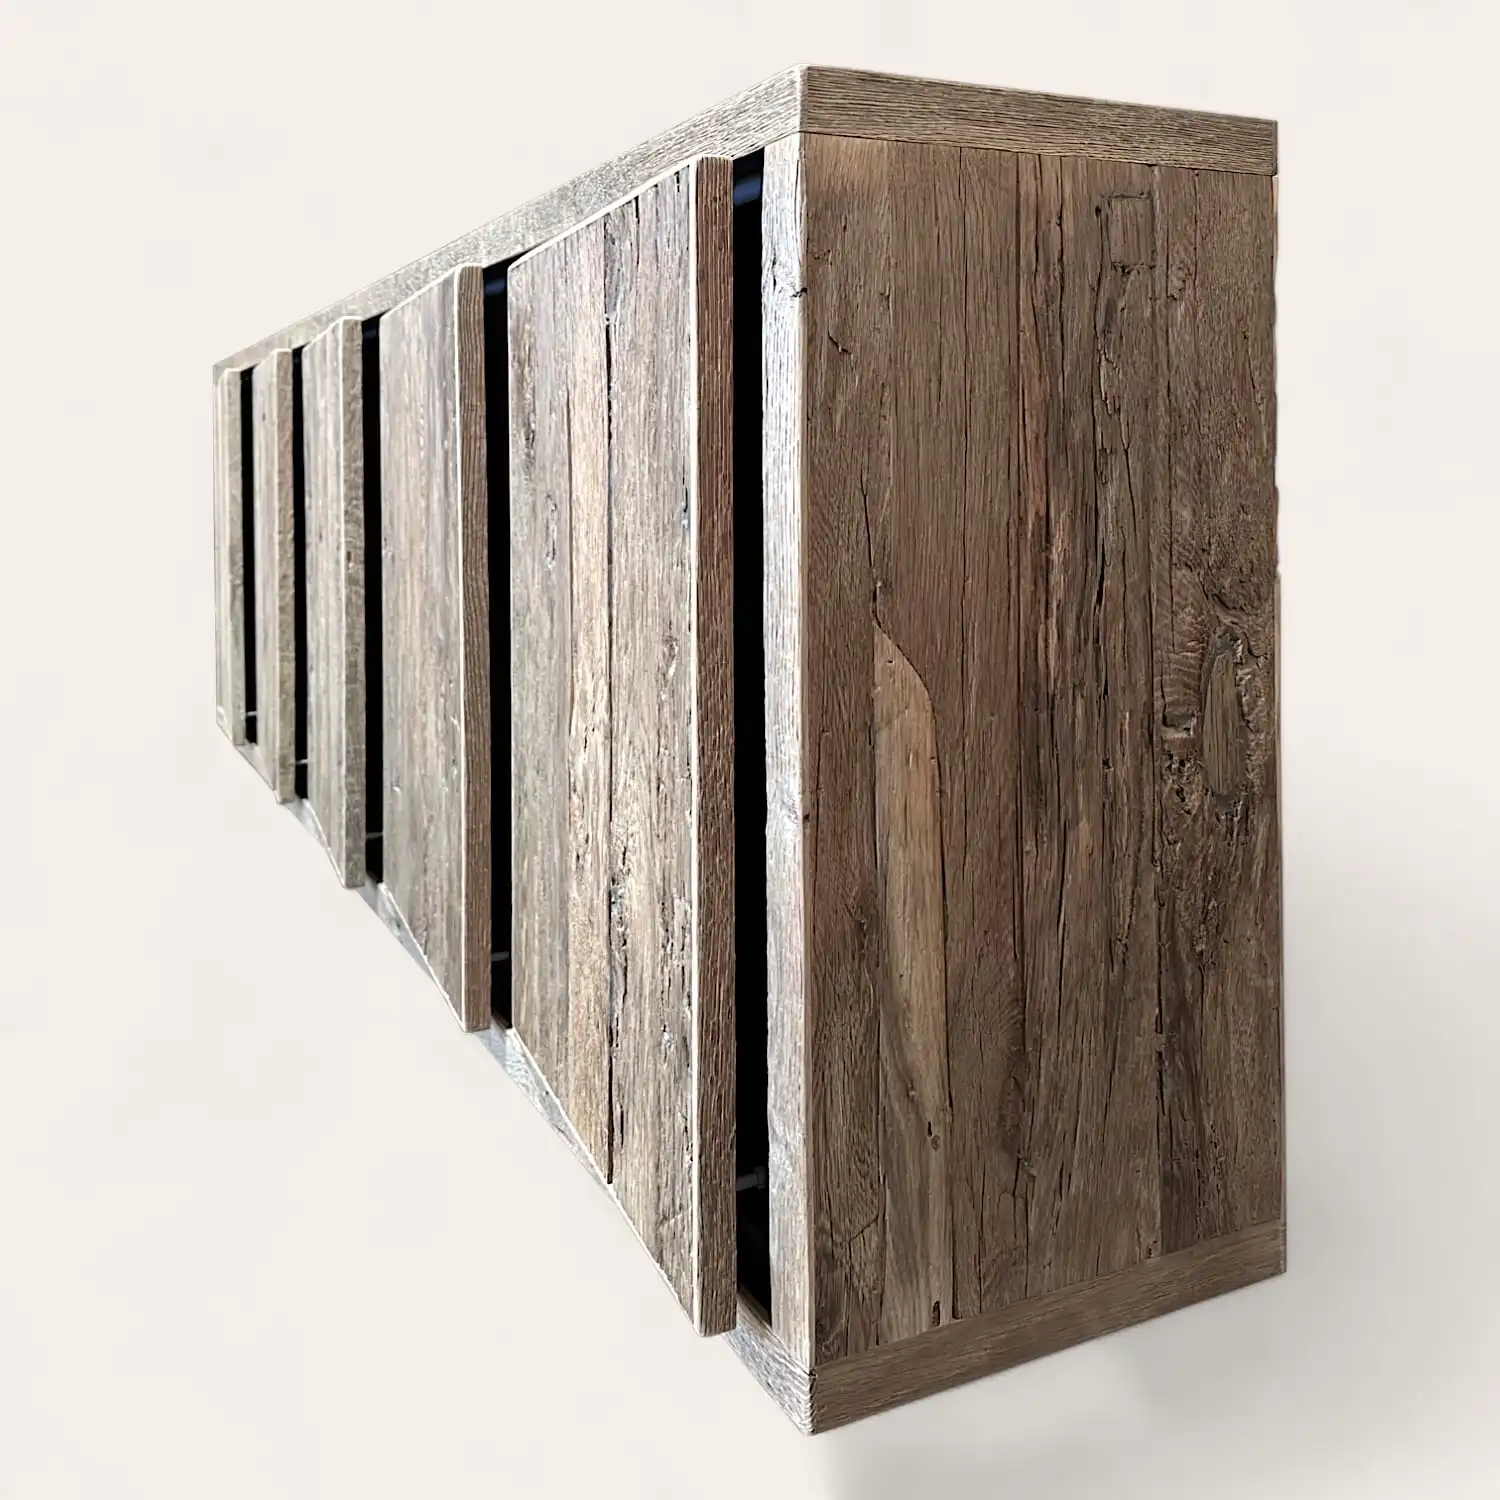  Une série de panneaux de bois verticaux disposés en rangée, créant un motif texturé et répétitif sur un fond blanc. 